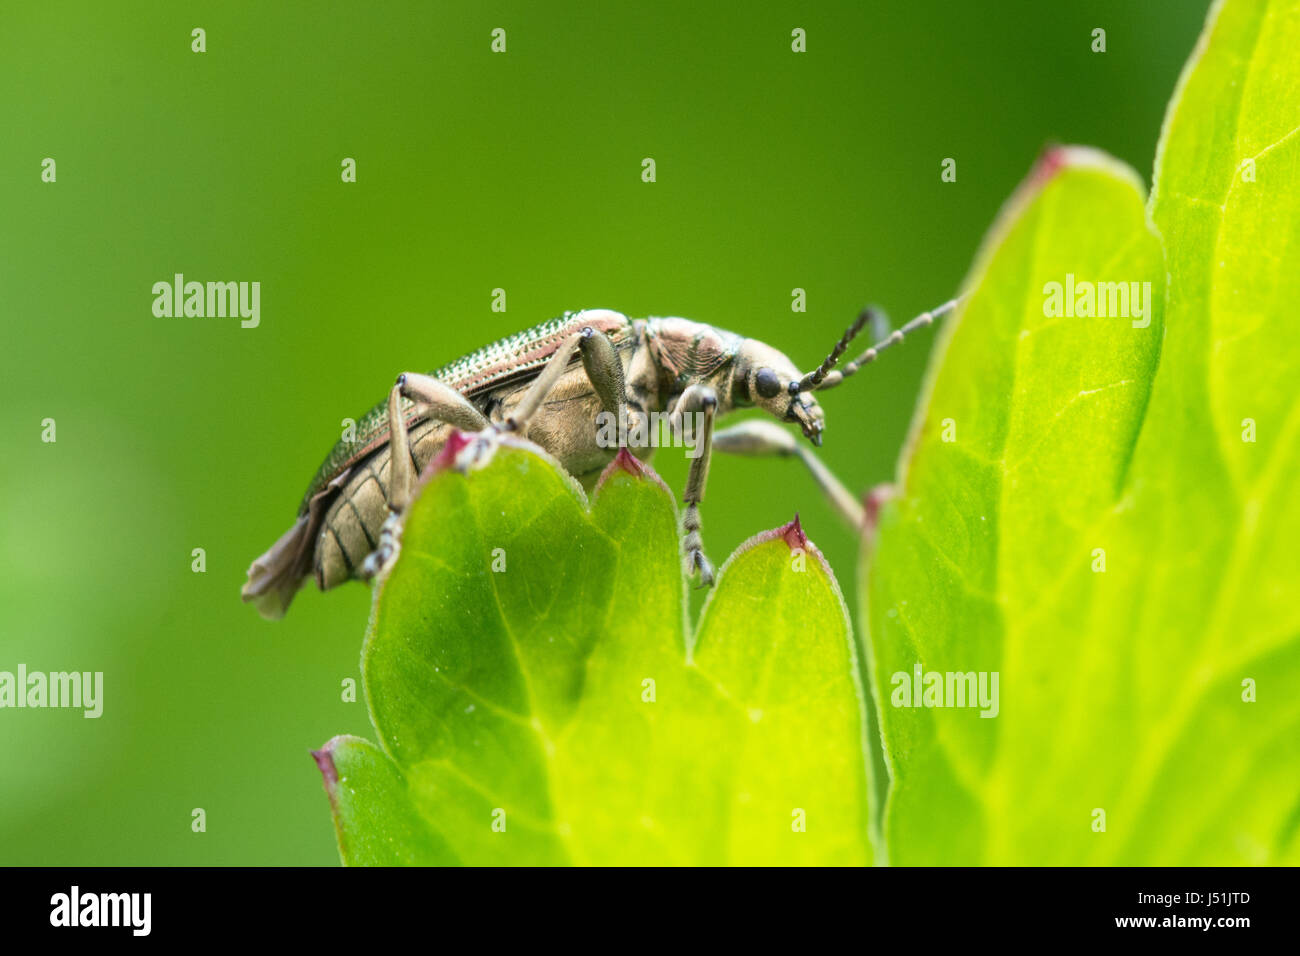 Gros plan du coléoptère (Order Coleoptera) sur une feuille verte, Royaume-Uni Banque D'Images